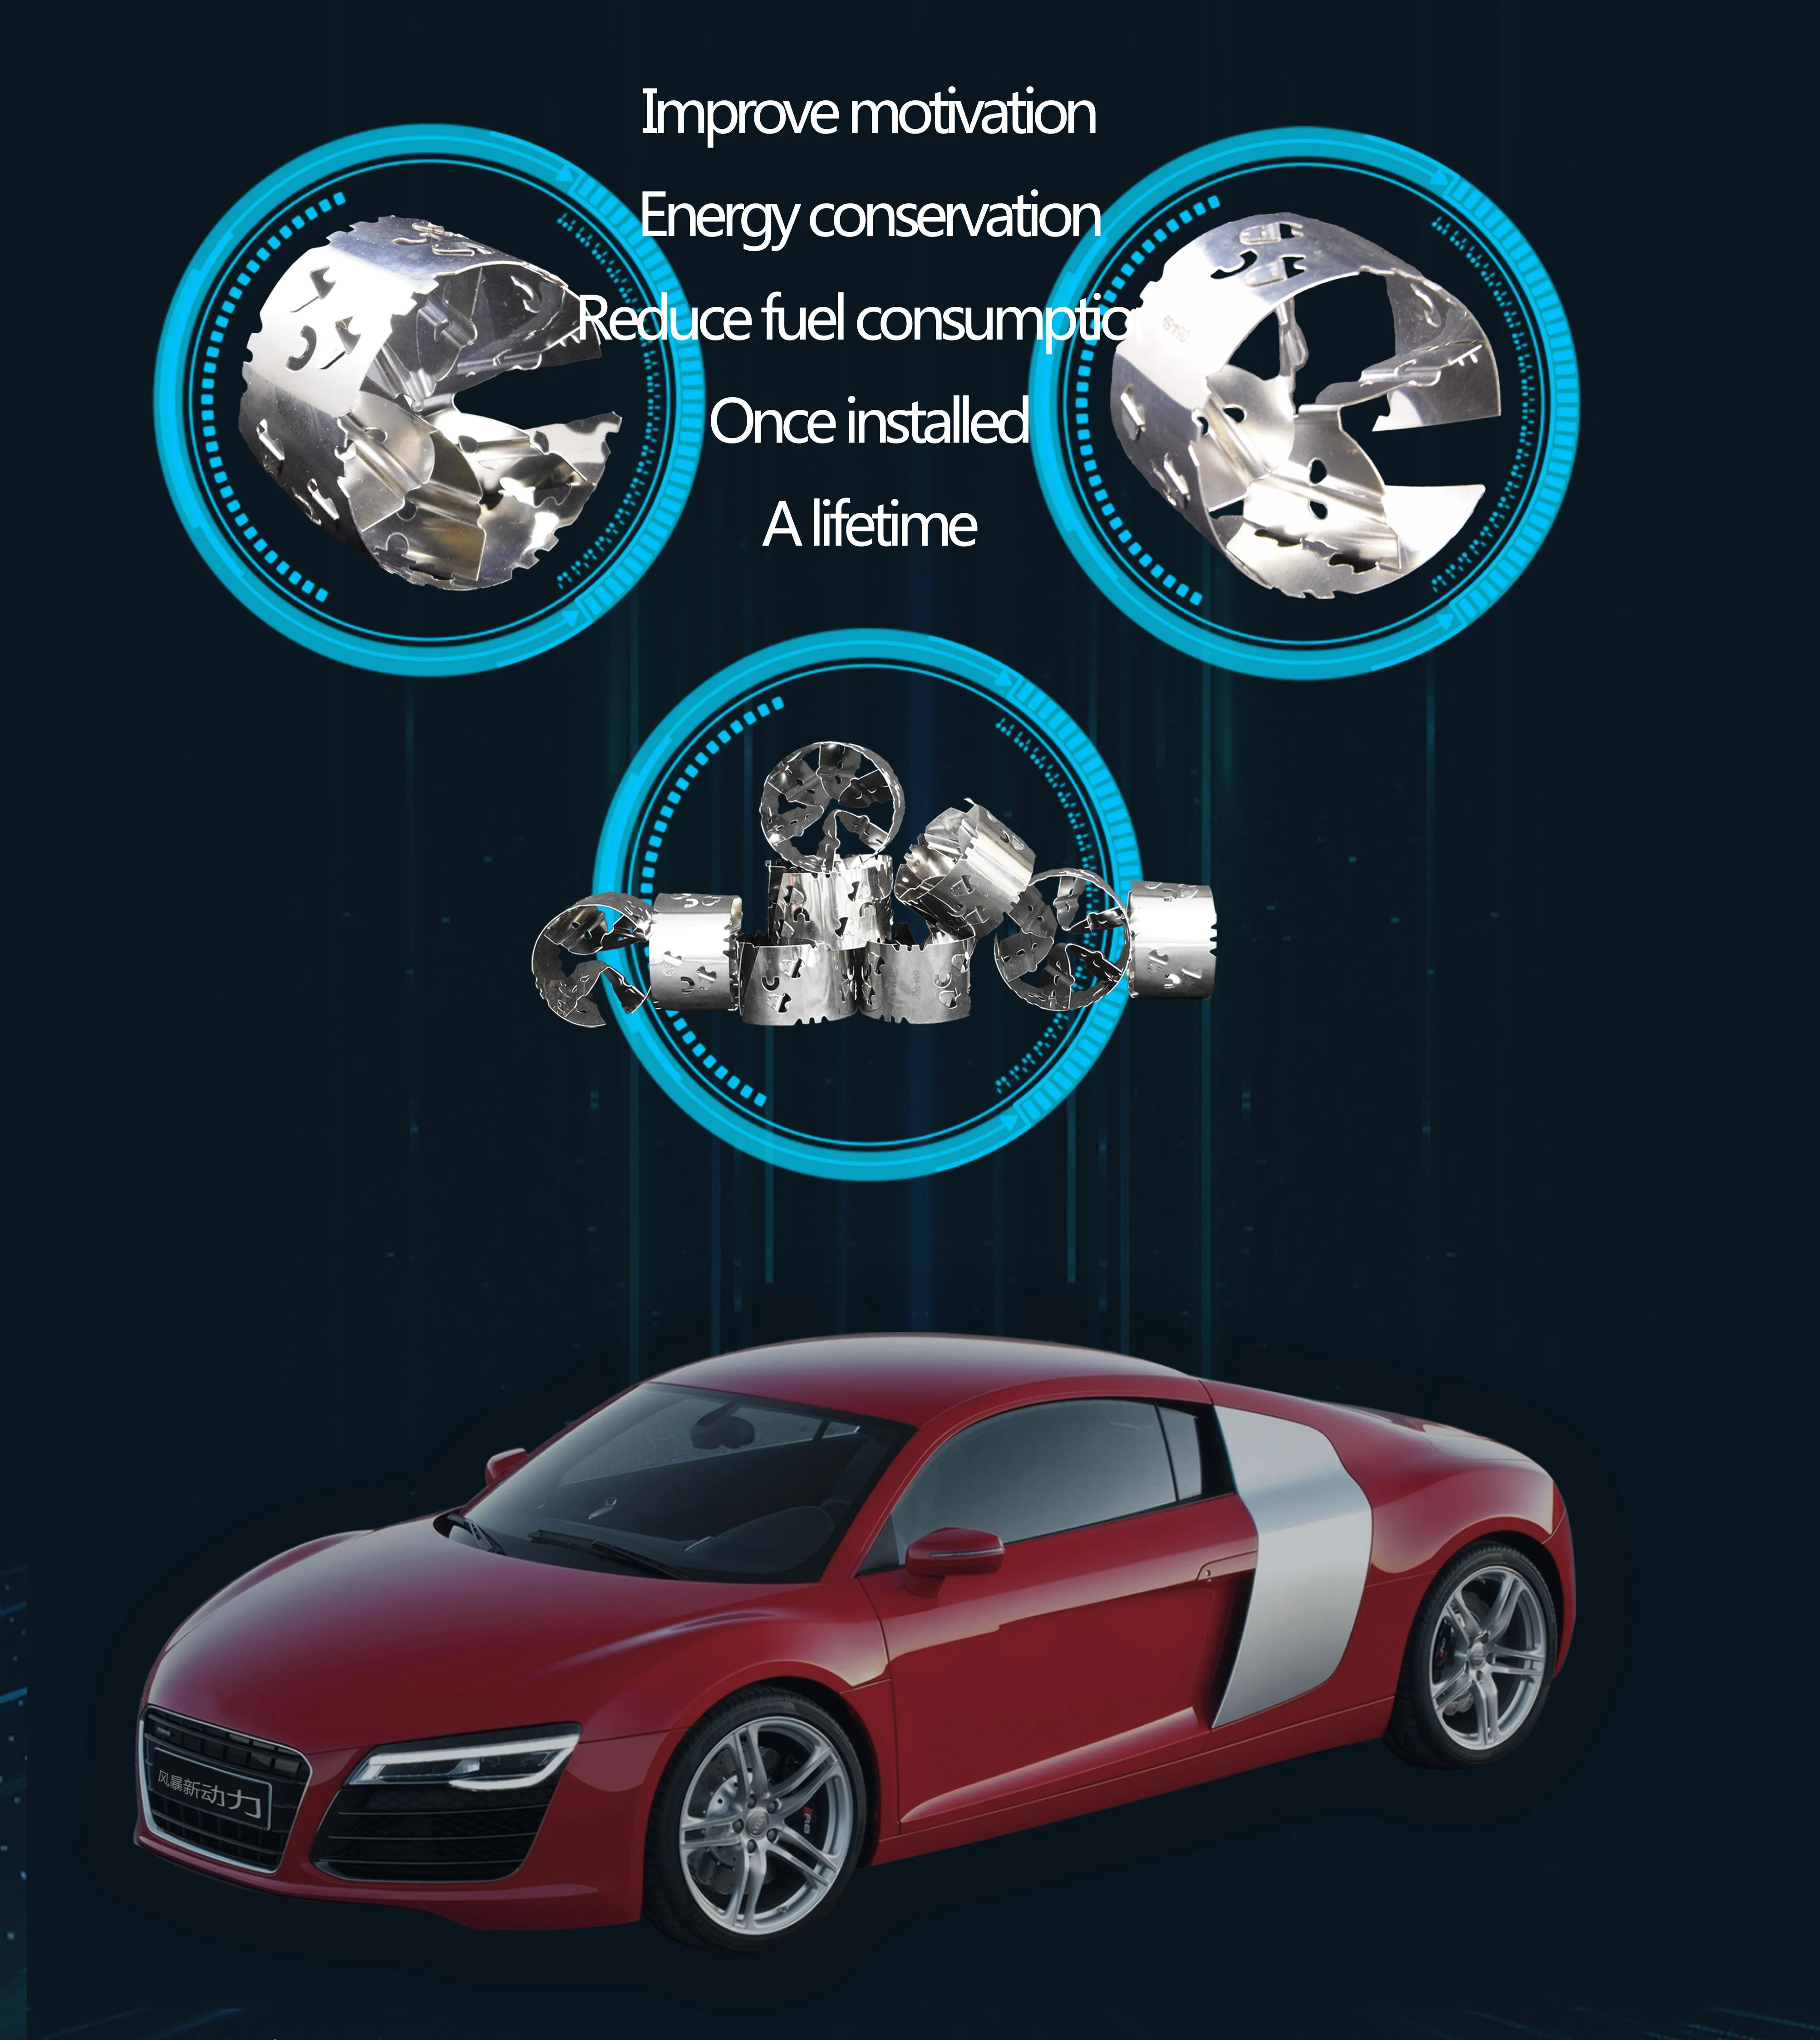 54-59 мм механический Турбокомпрессор для экономии топлива Впускной модифицированный ускоритель автомобиля-Стайлинг подходит для 1.6L/1.8L/2.0L смещения